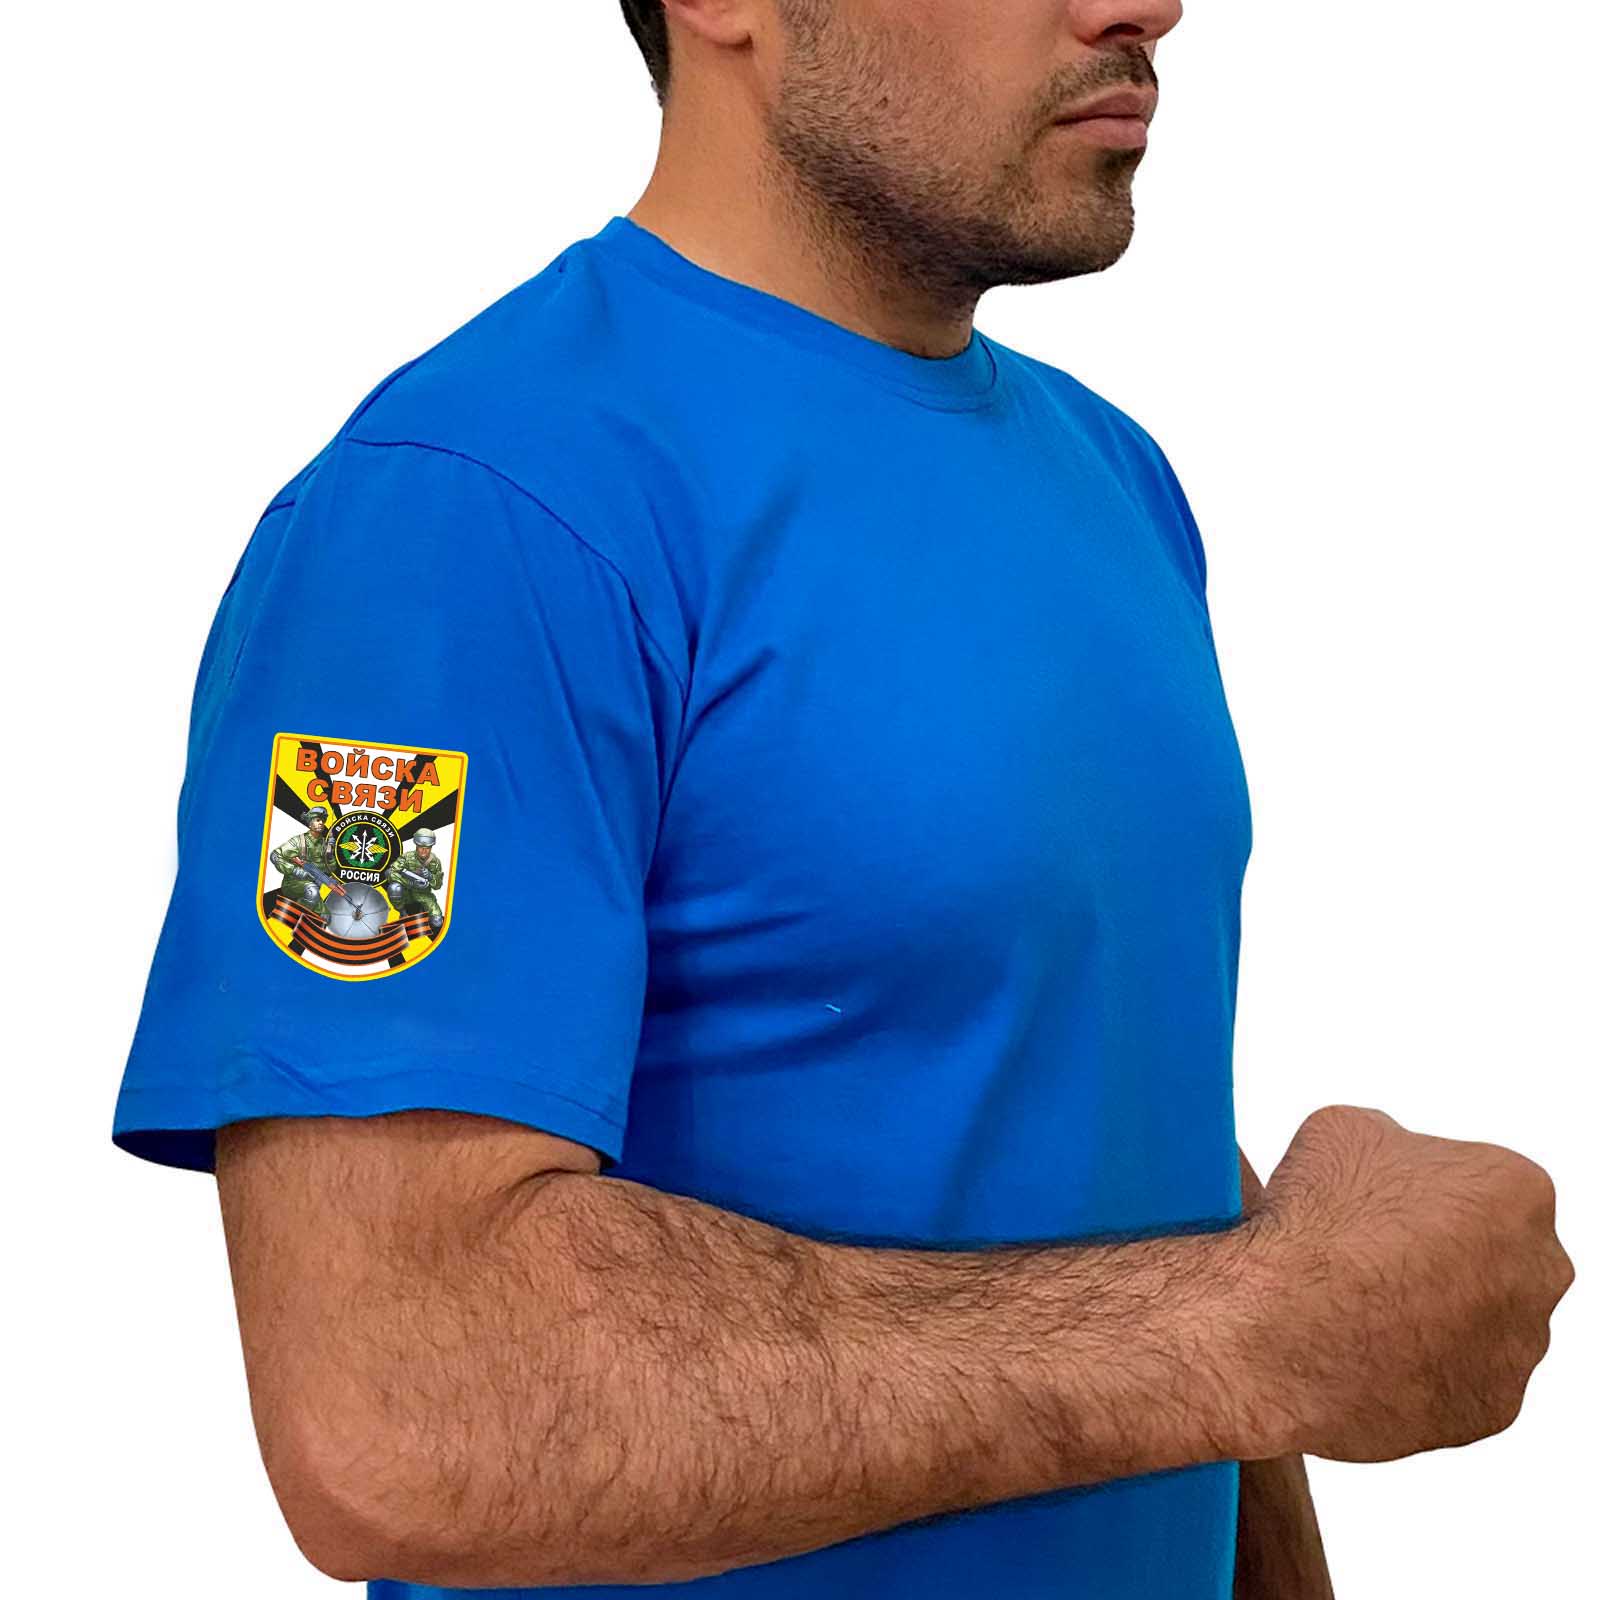 Купить васильковую надежную футболку с термотрансфером Войска Связи онлайн